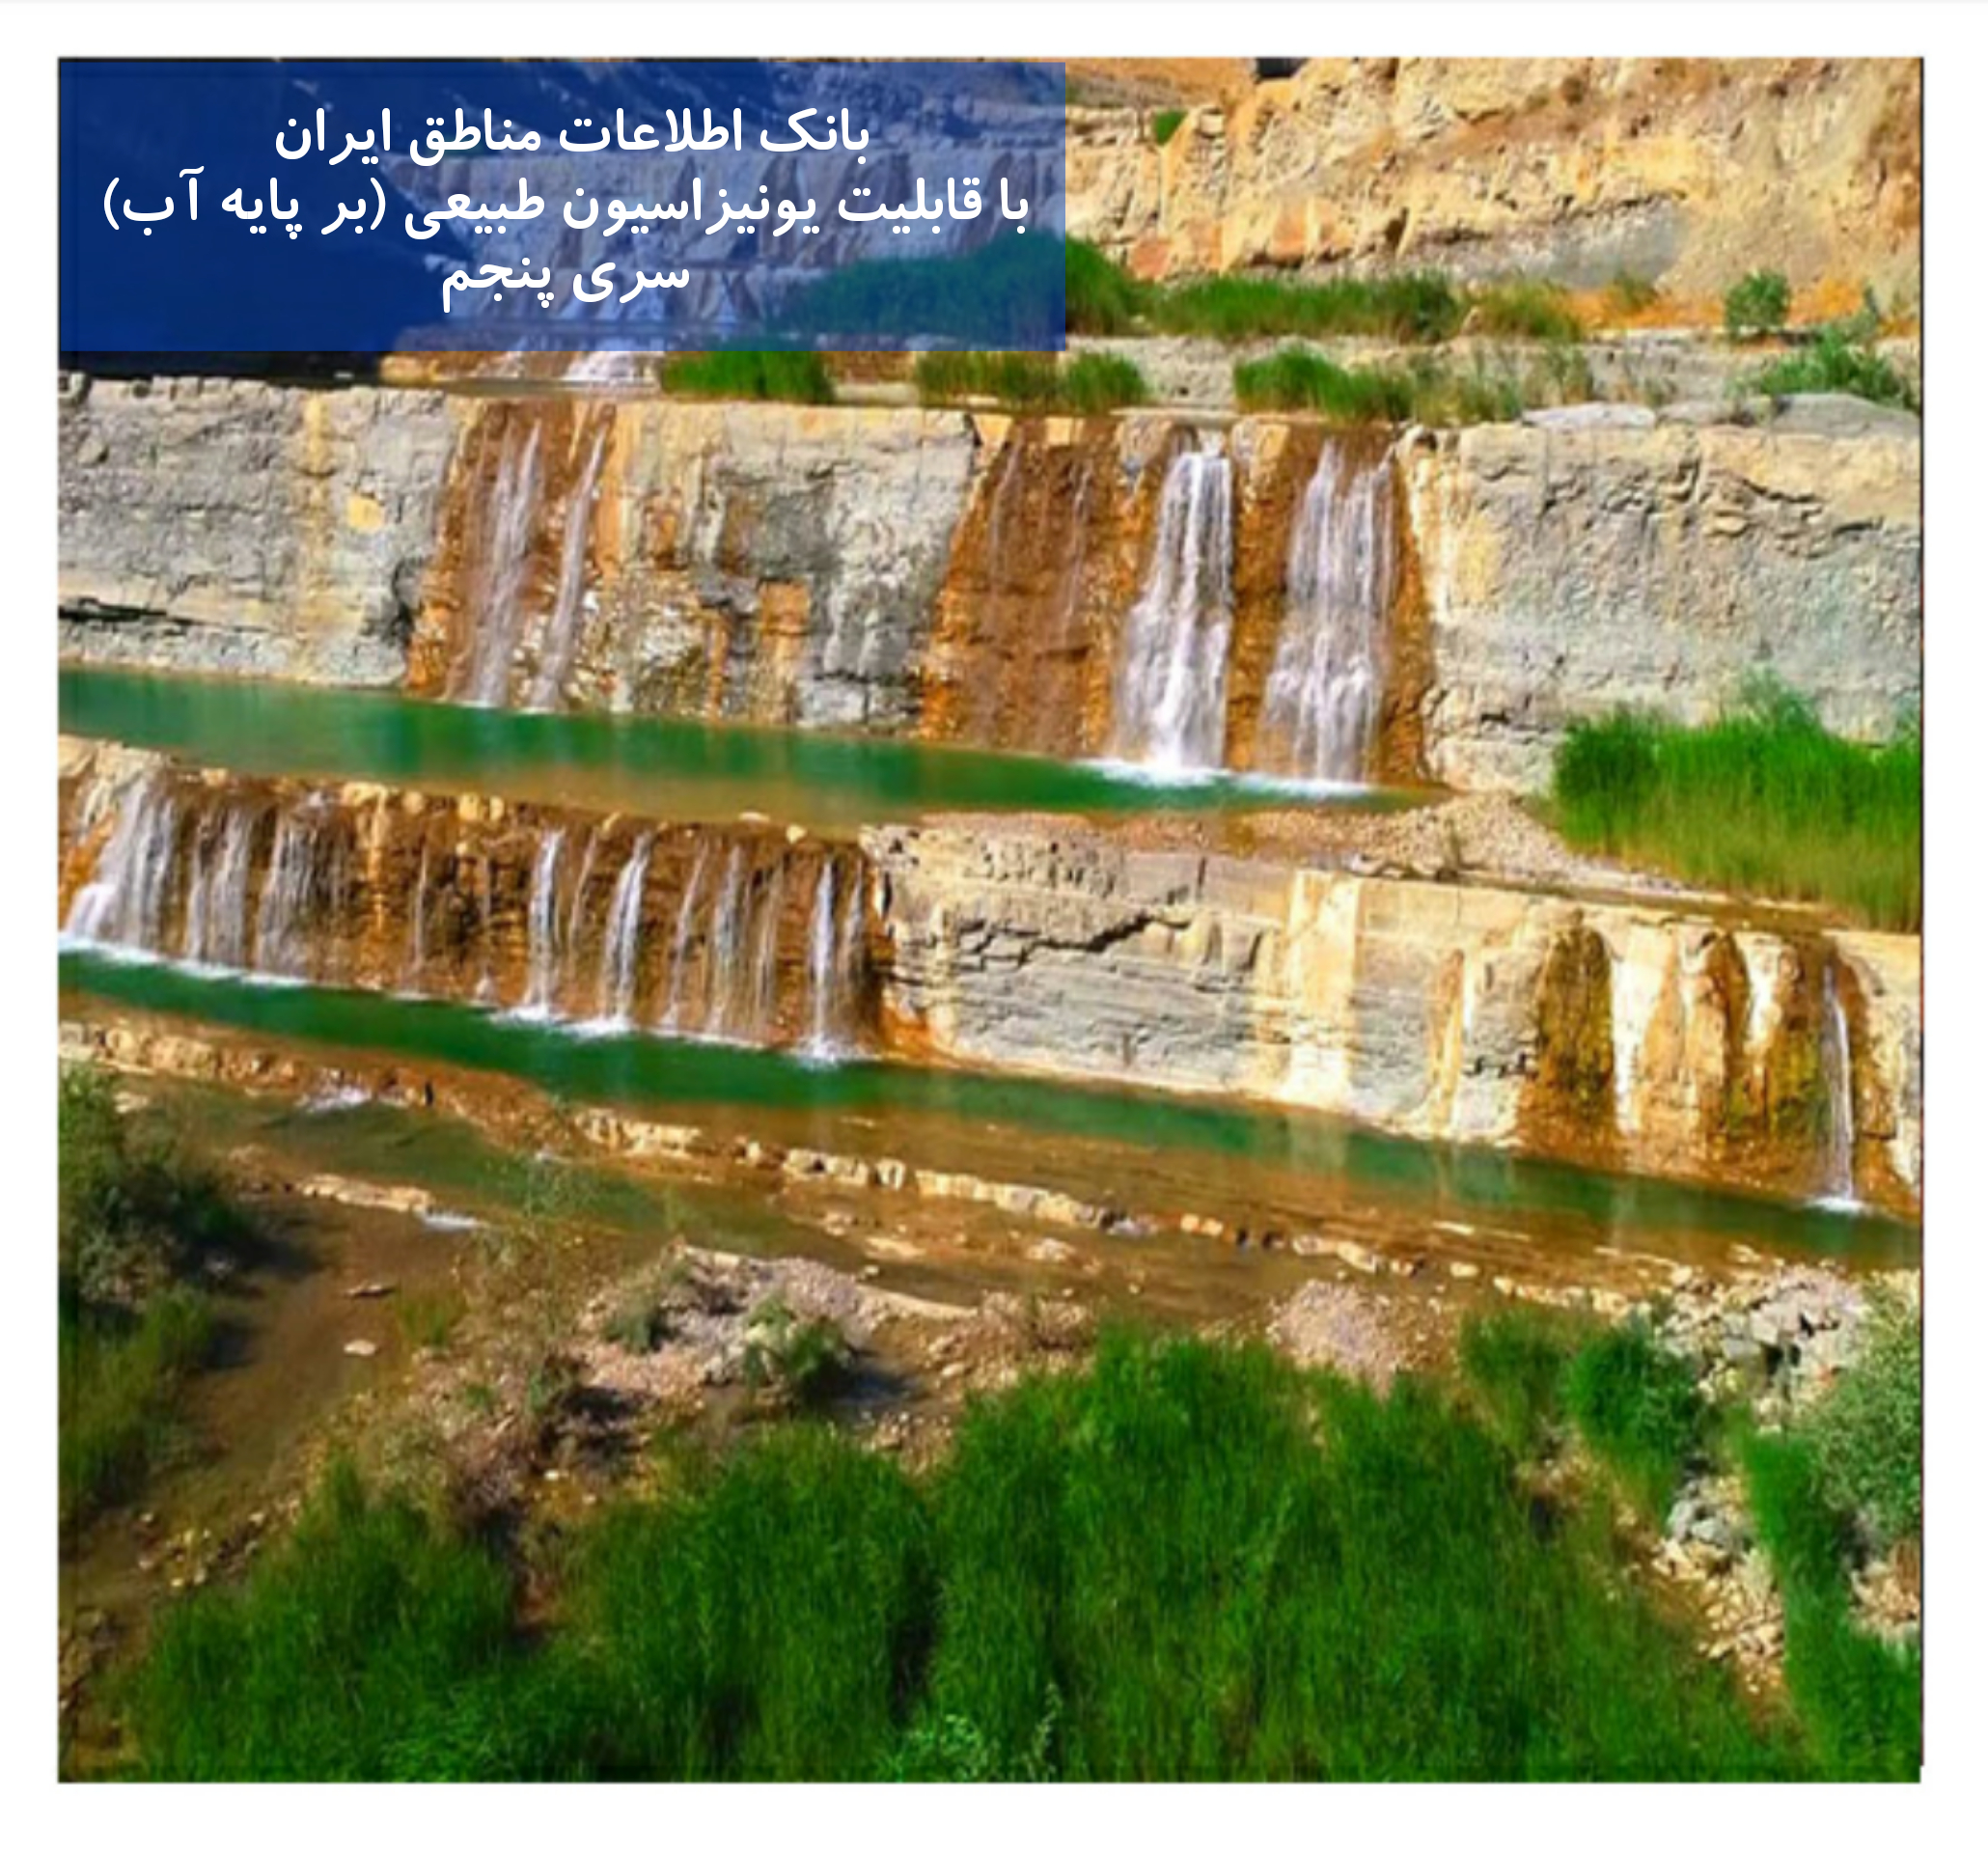 بانک اطلاعات مناطق ایران با خواص یونیزاسیون طبیعی بر پایه آب (5)